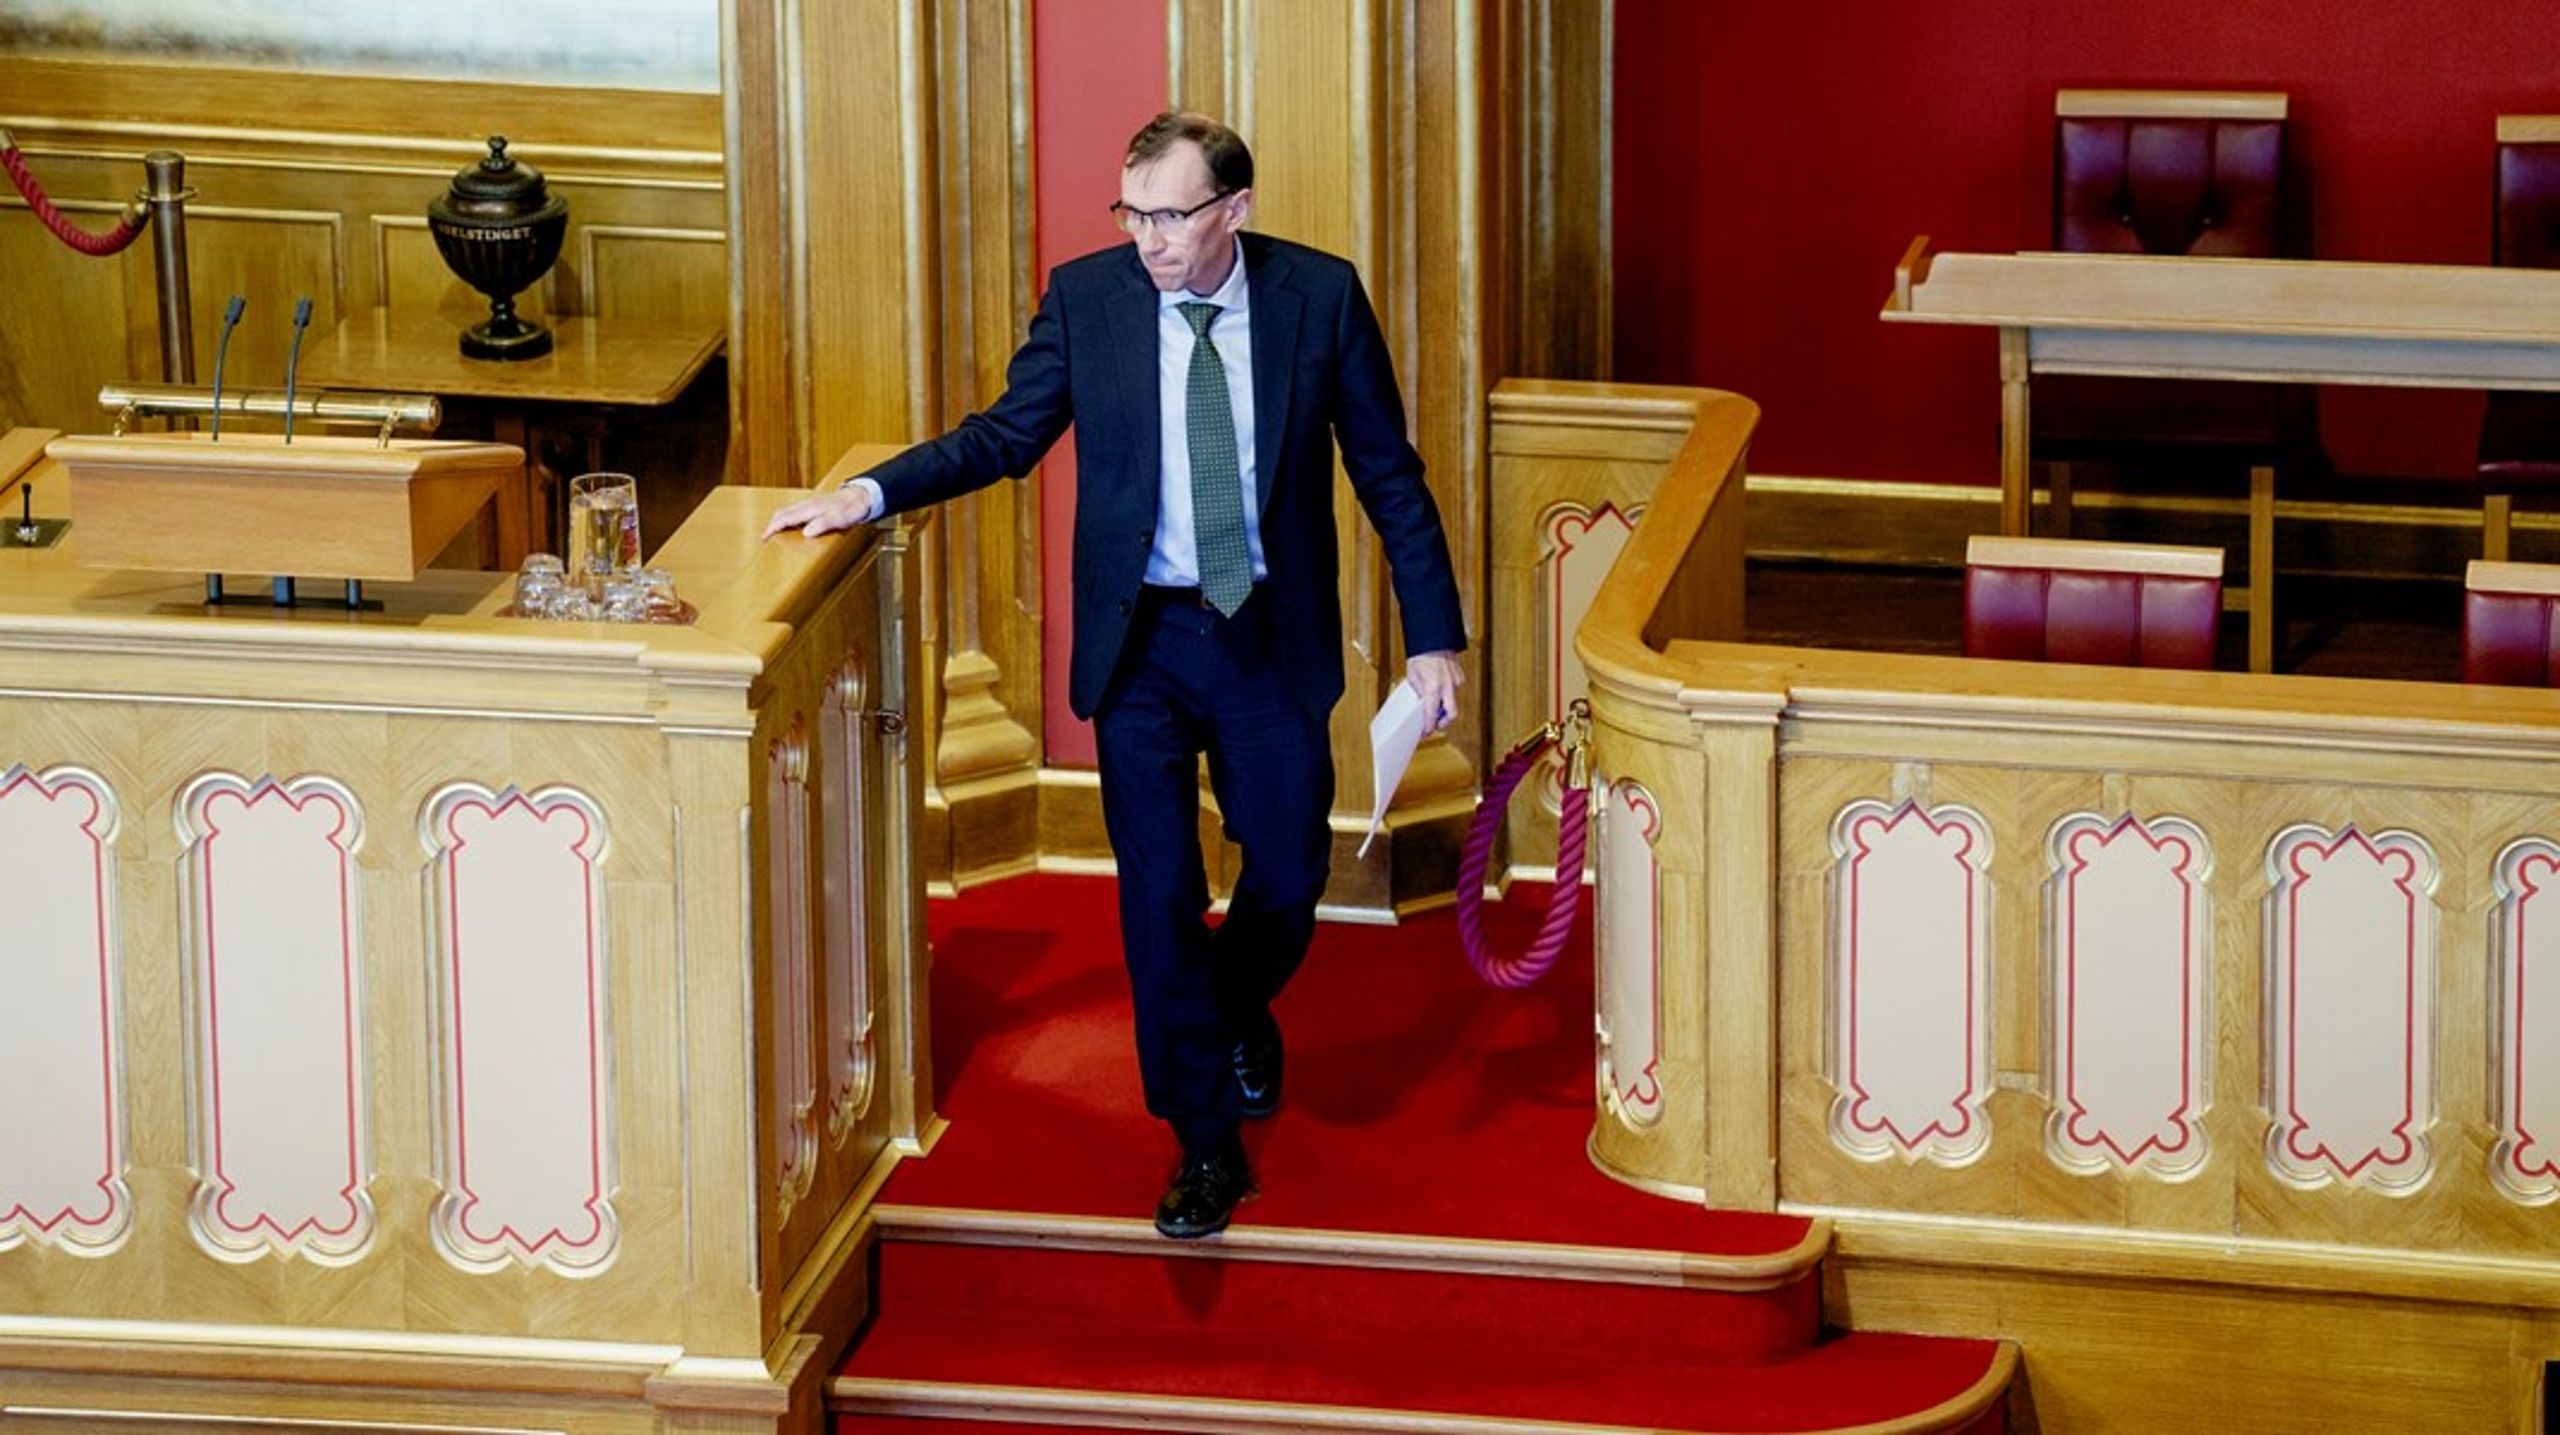 Utenriksminister Espen Barth Eide (Ap) ble utfordret om russiske midler i Stortinget.